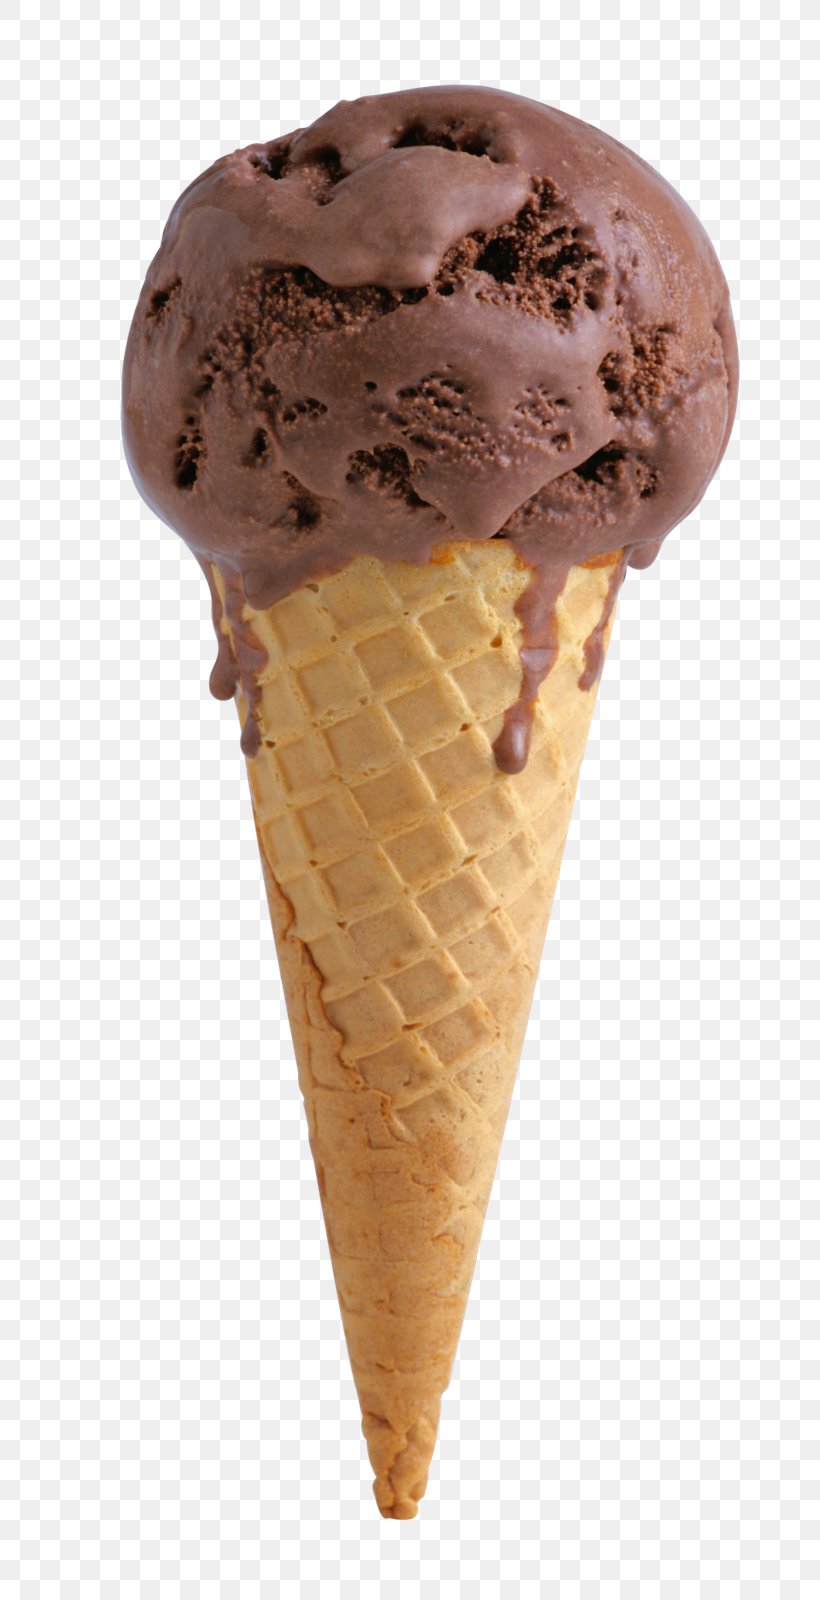 Ice Cream Cones Chocolate Ice Cream Sundae, PNG, 793x1600px, Ice Cream Cones, Chocolate, Chocolate Ice Cream, Cream, Dairy Product Download Free